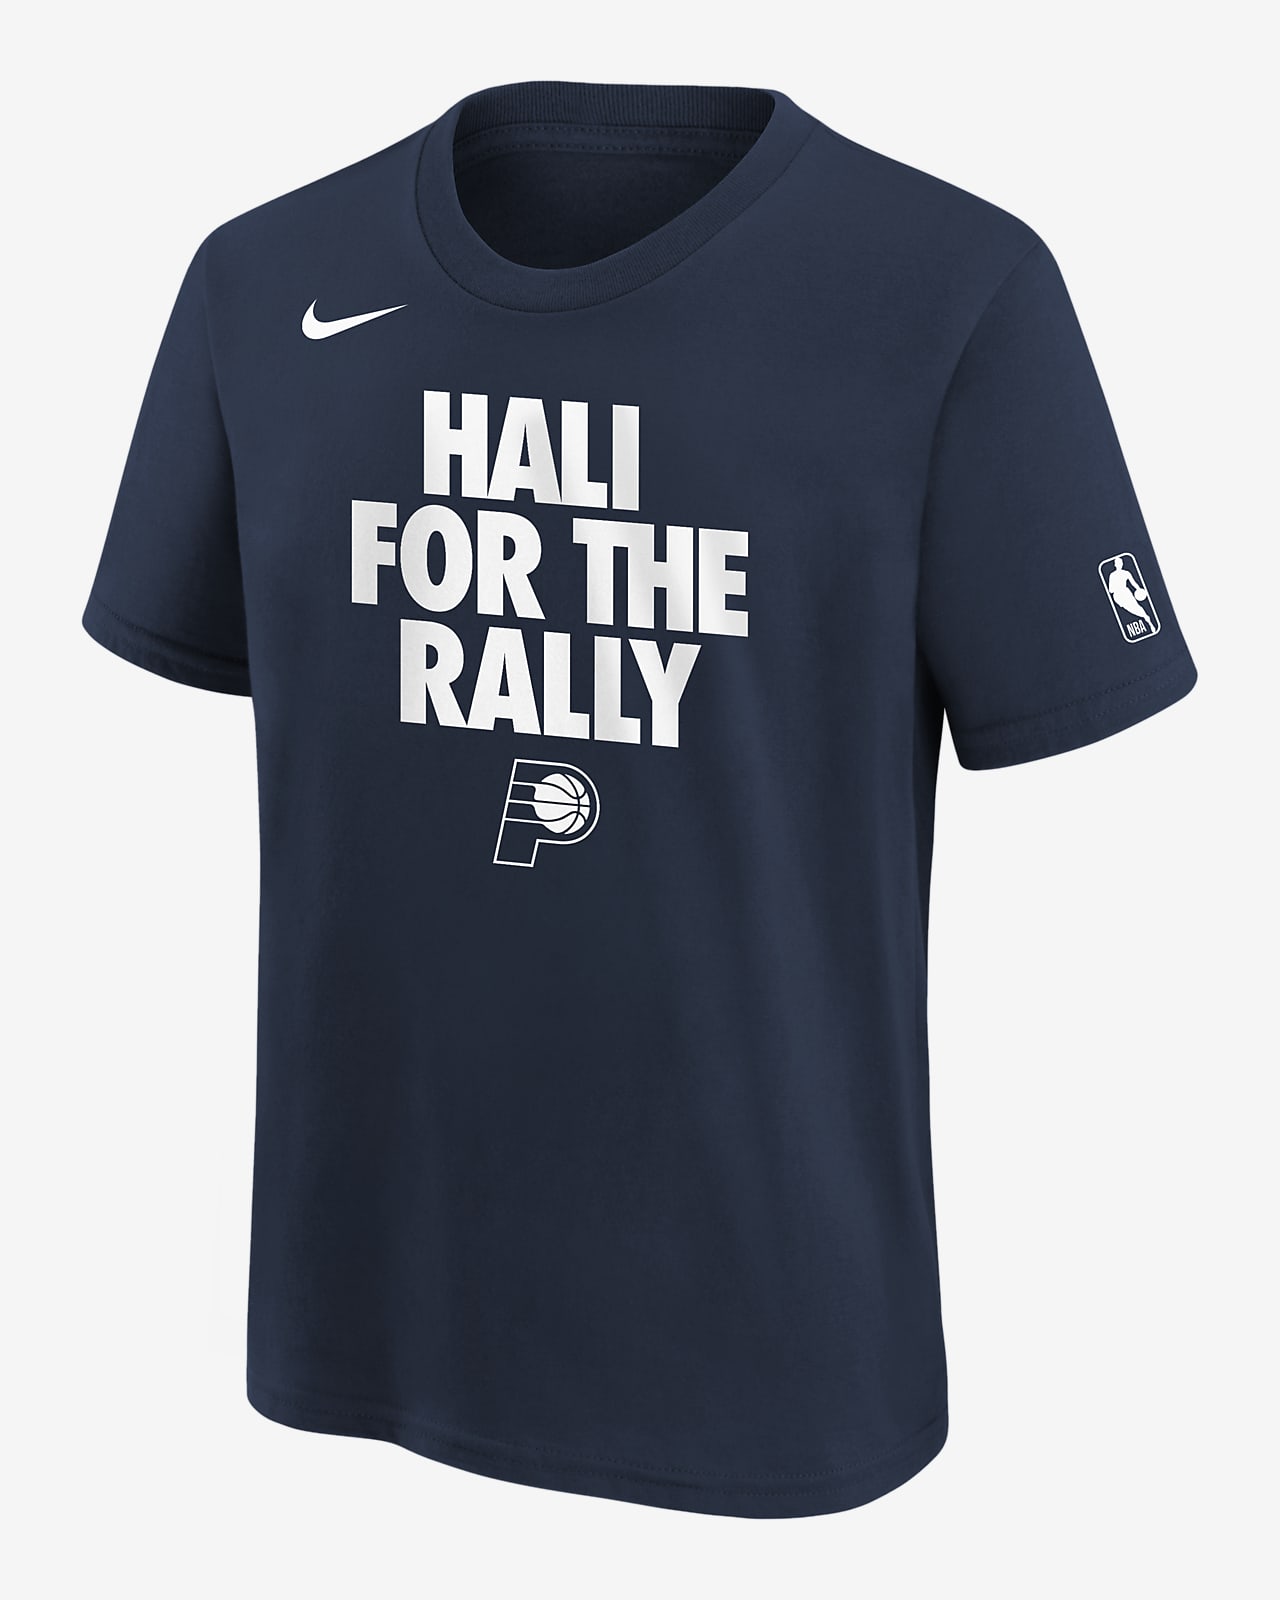 Tyrese Haliburton Indiana Pacers Big Kids' Nike NBA T-Shirt